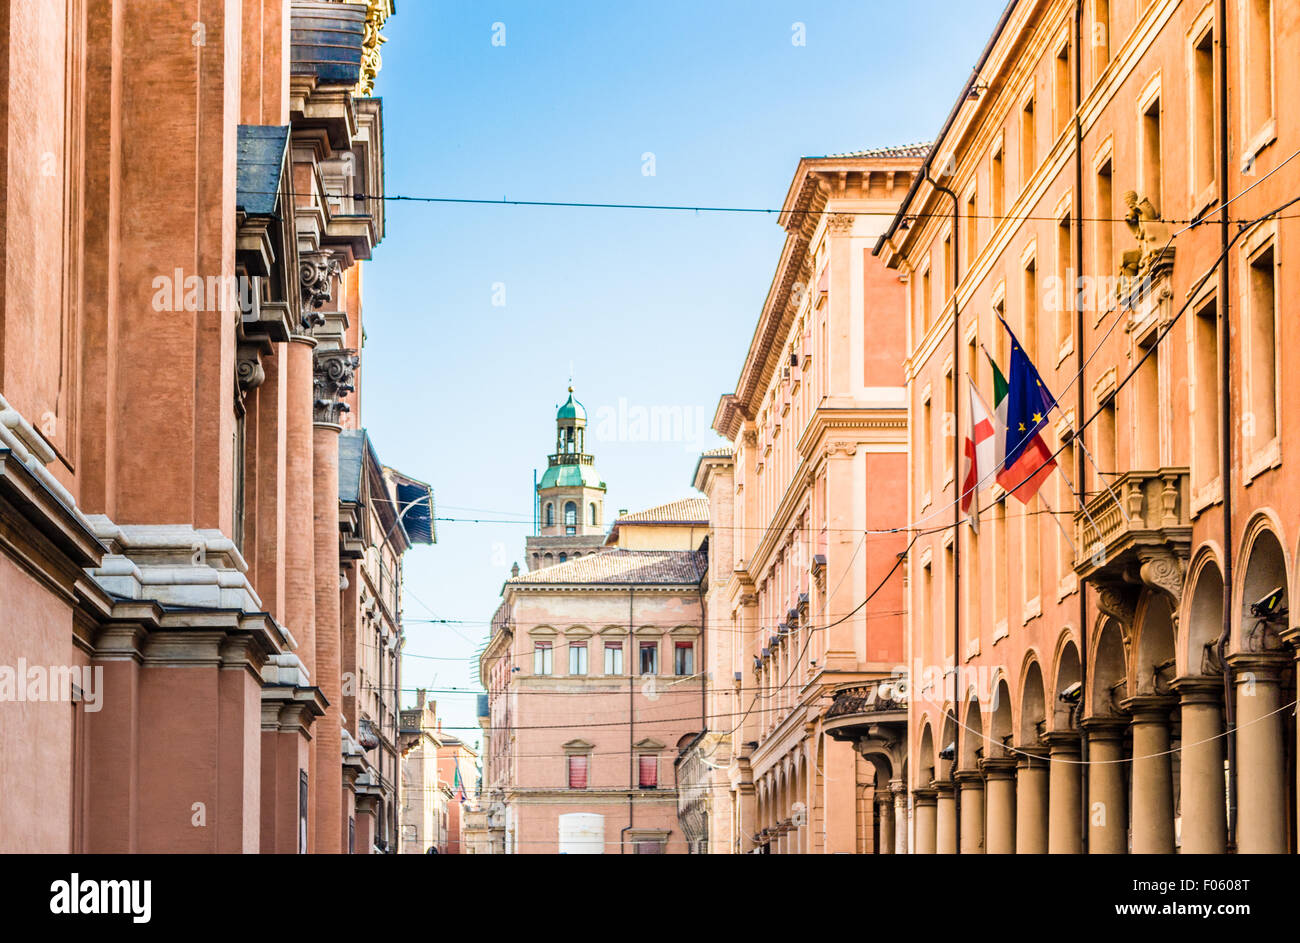 Moderno e vecchi sentimenti insieme mentre si cammina attraverso vicoli, portici, Windows e gli antichi edifici del centro storico di Bologna in Italia settentrionale Foto Stock